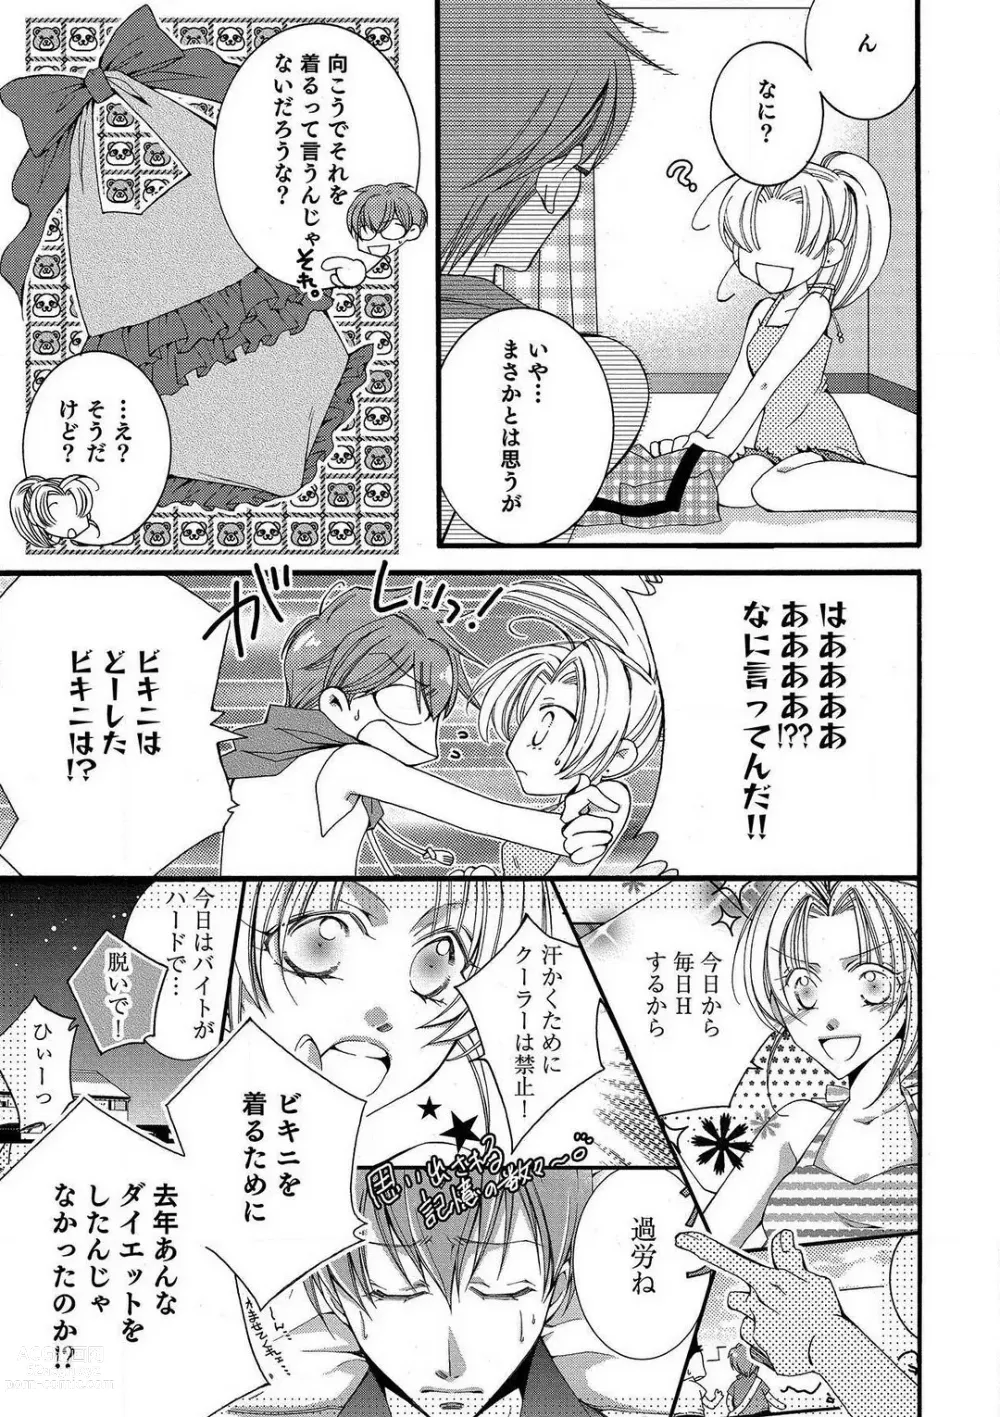 Page 59 of manga LOVE×PLAY 1-4